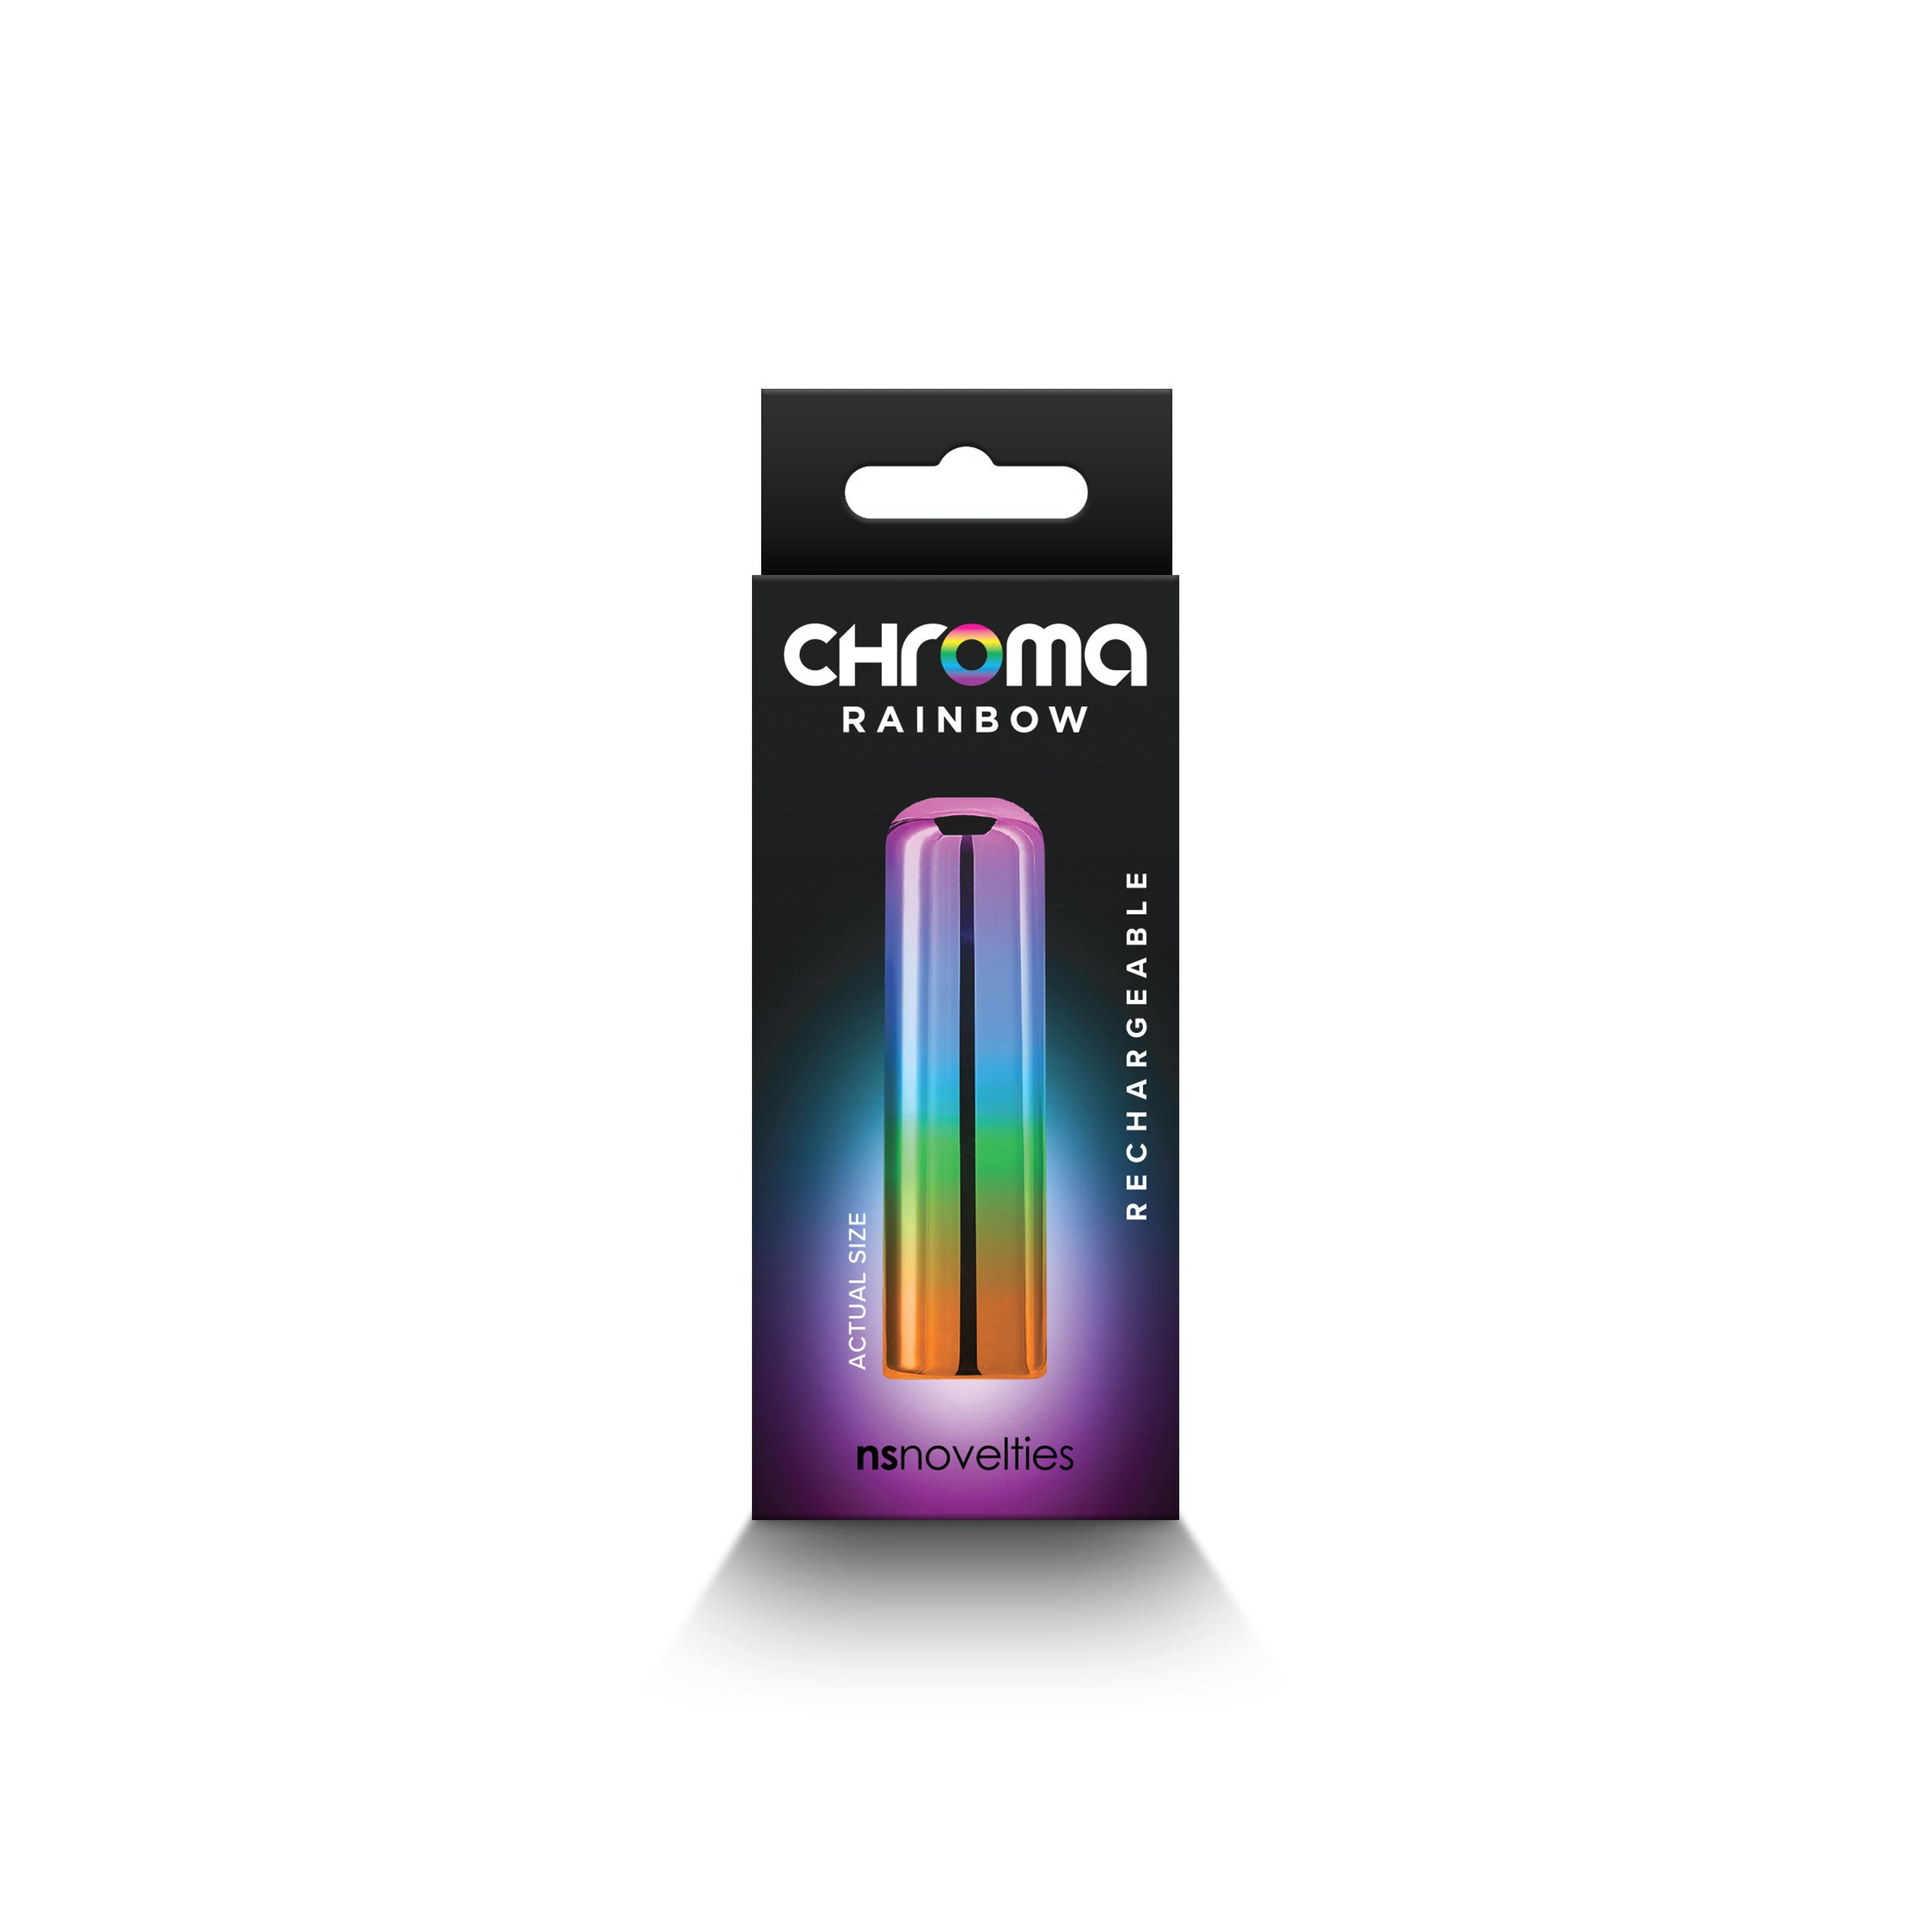 Chroma - Rainbow - Small-3